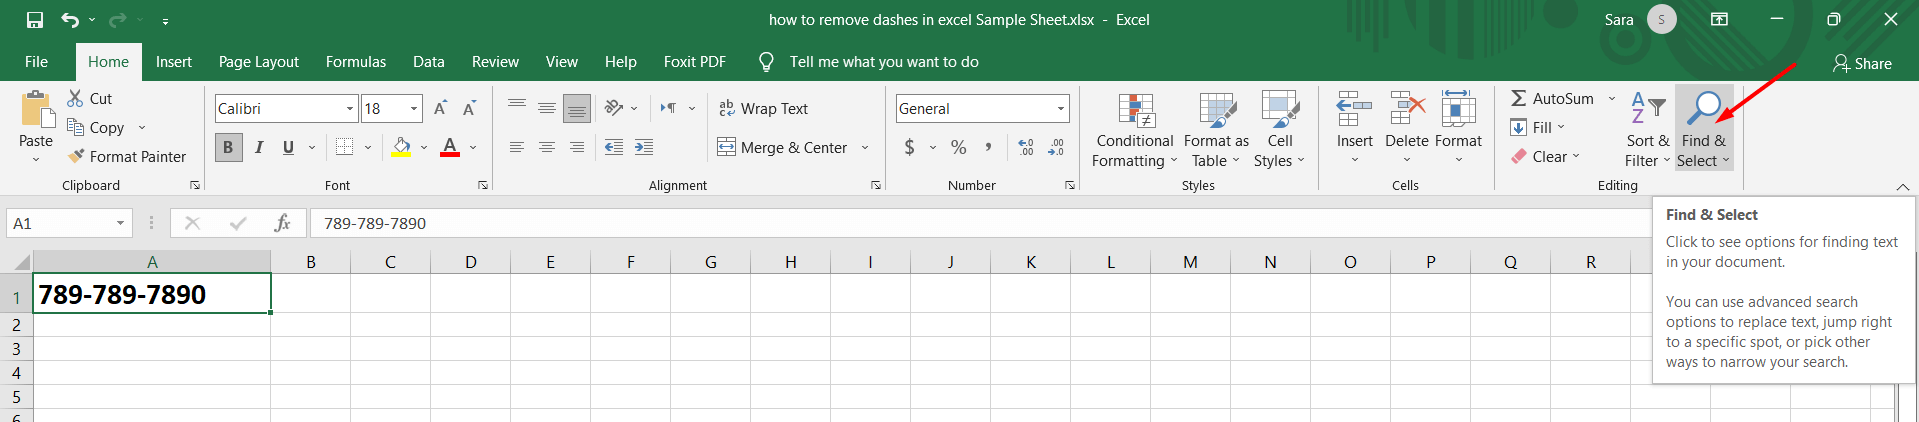 Cách xóa dấu gạch ngang trong google sheet